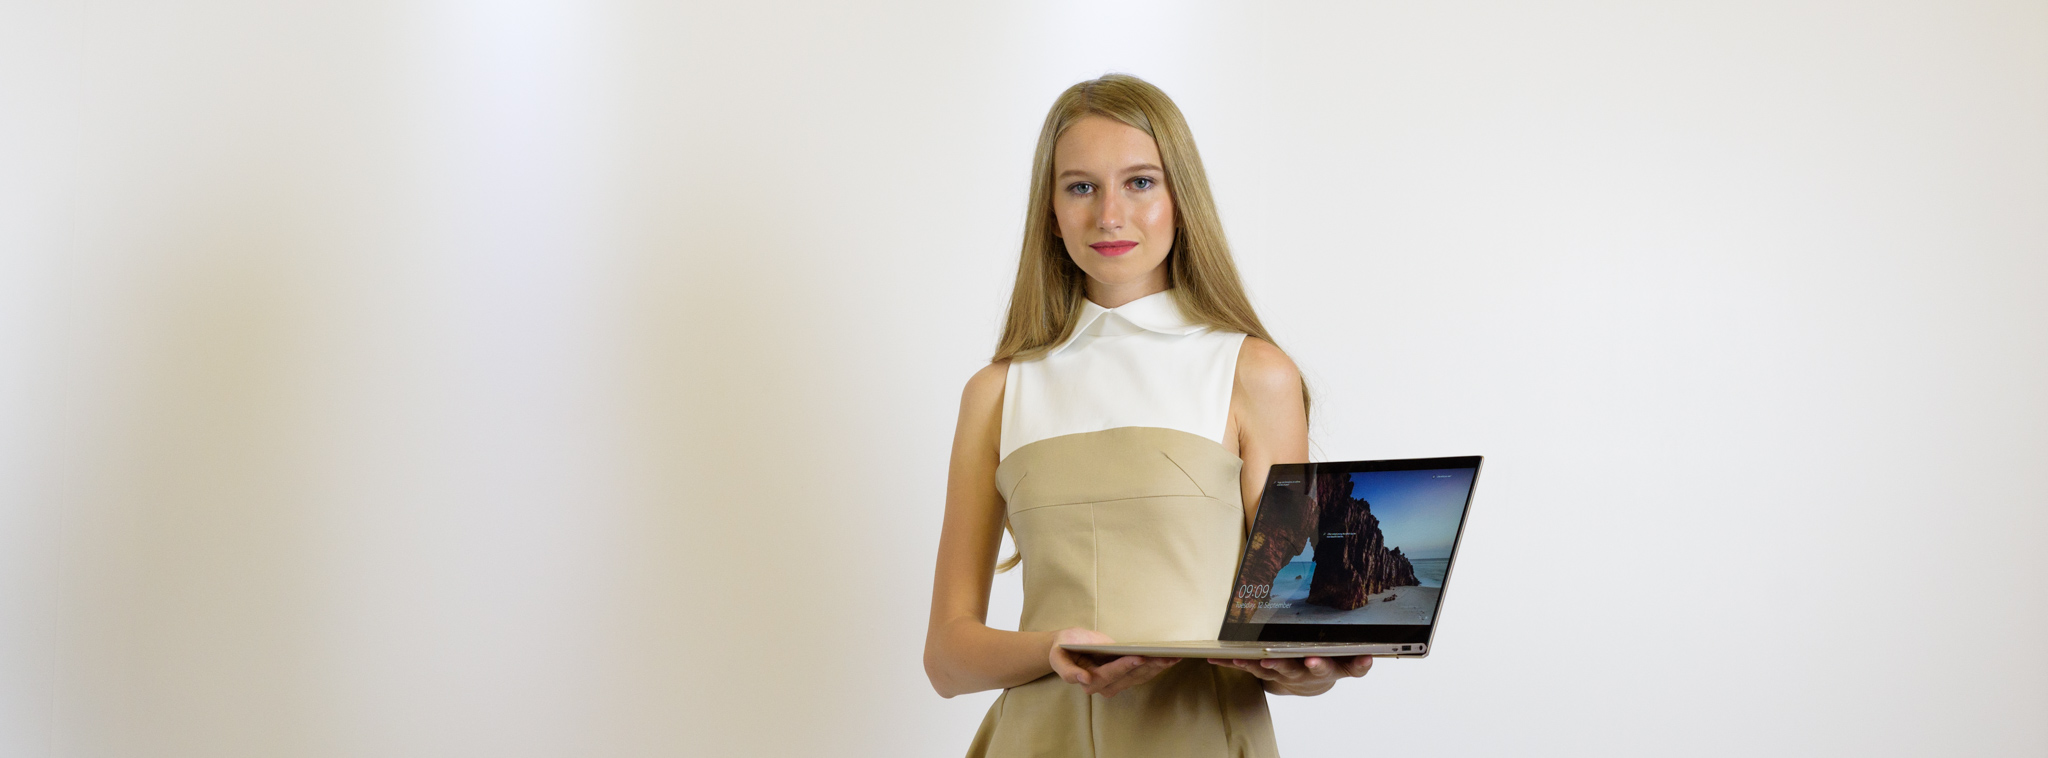 HP làm mới dòng Envy 13 - Thiết kế tinh xảo, viền màn hình siêu mỏng, giá 19,9 triệu đồng